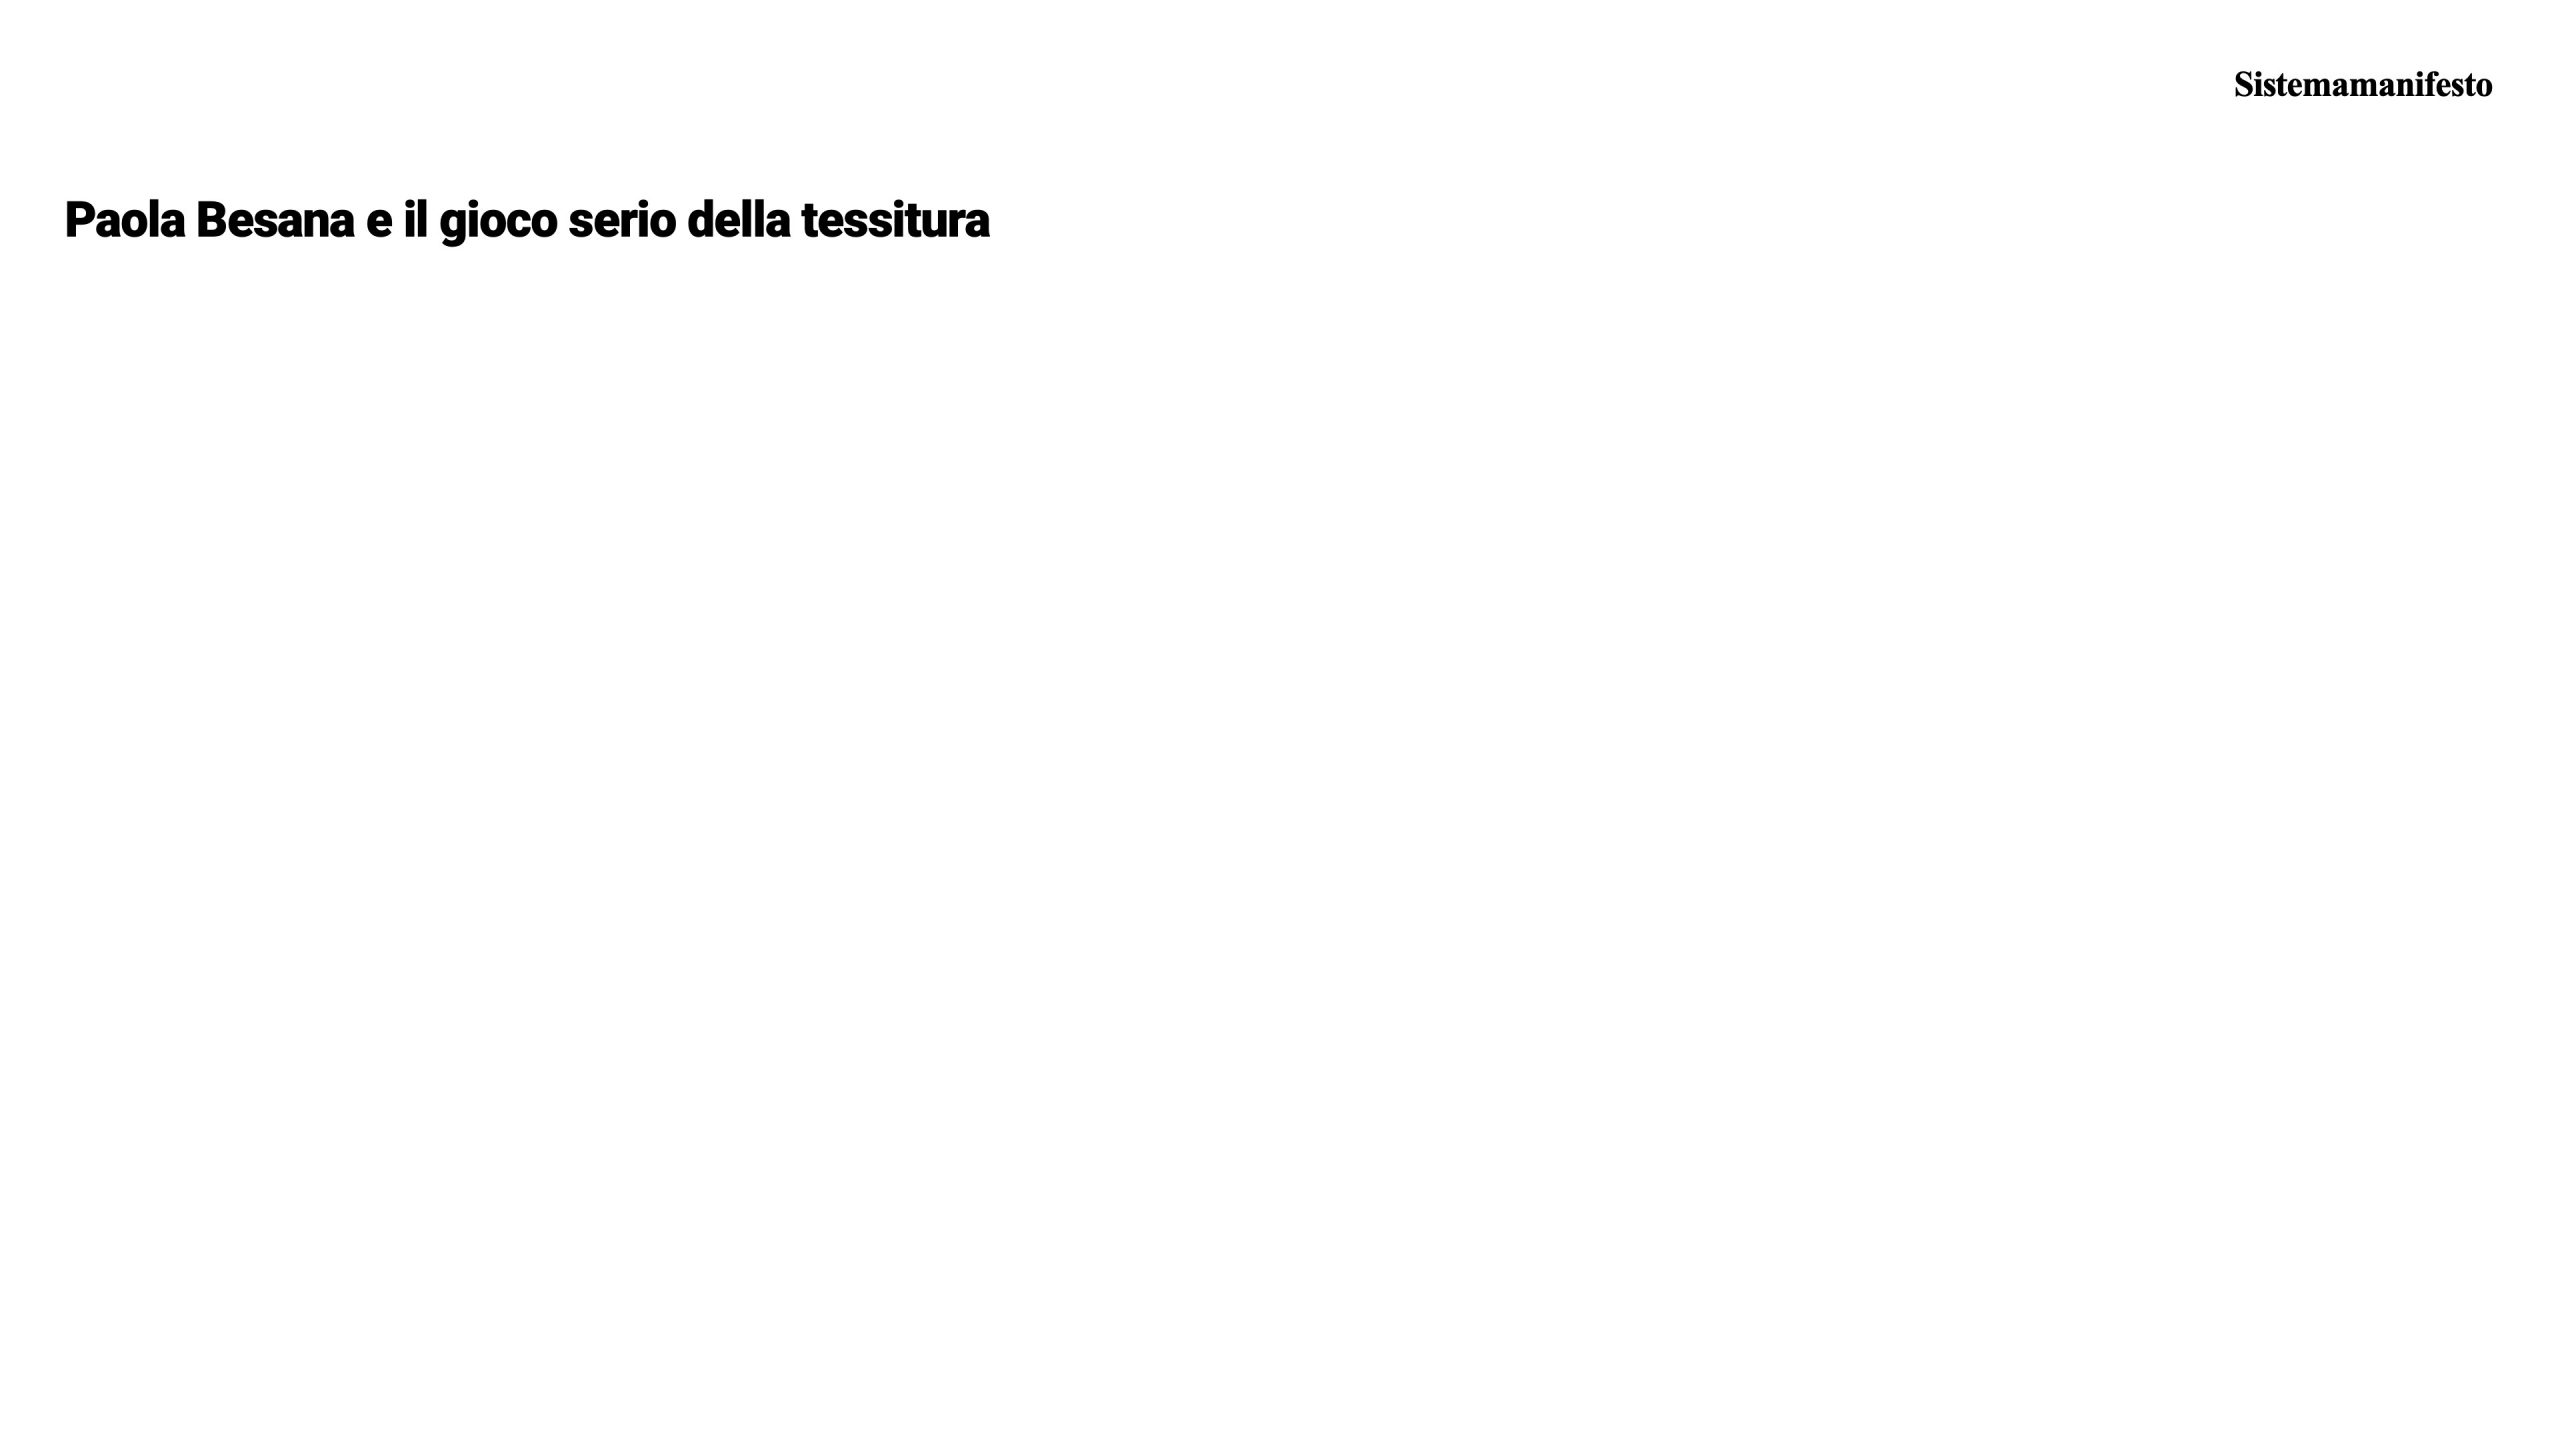 2022.03.26 - Paola Besana e il gioco serio della tessitura - PANICUM progetto didattico, Accademia di Belle Arti Brera - 1